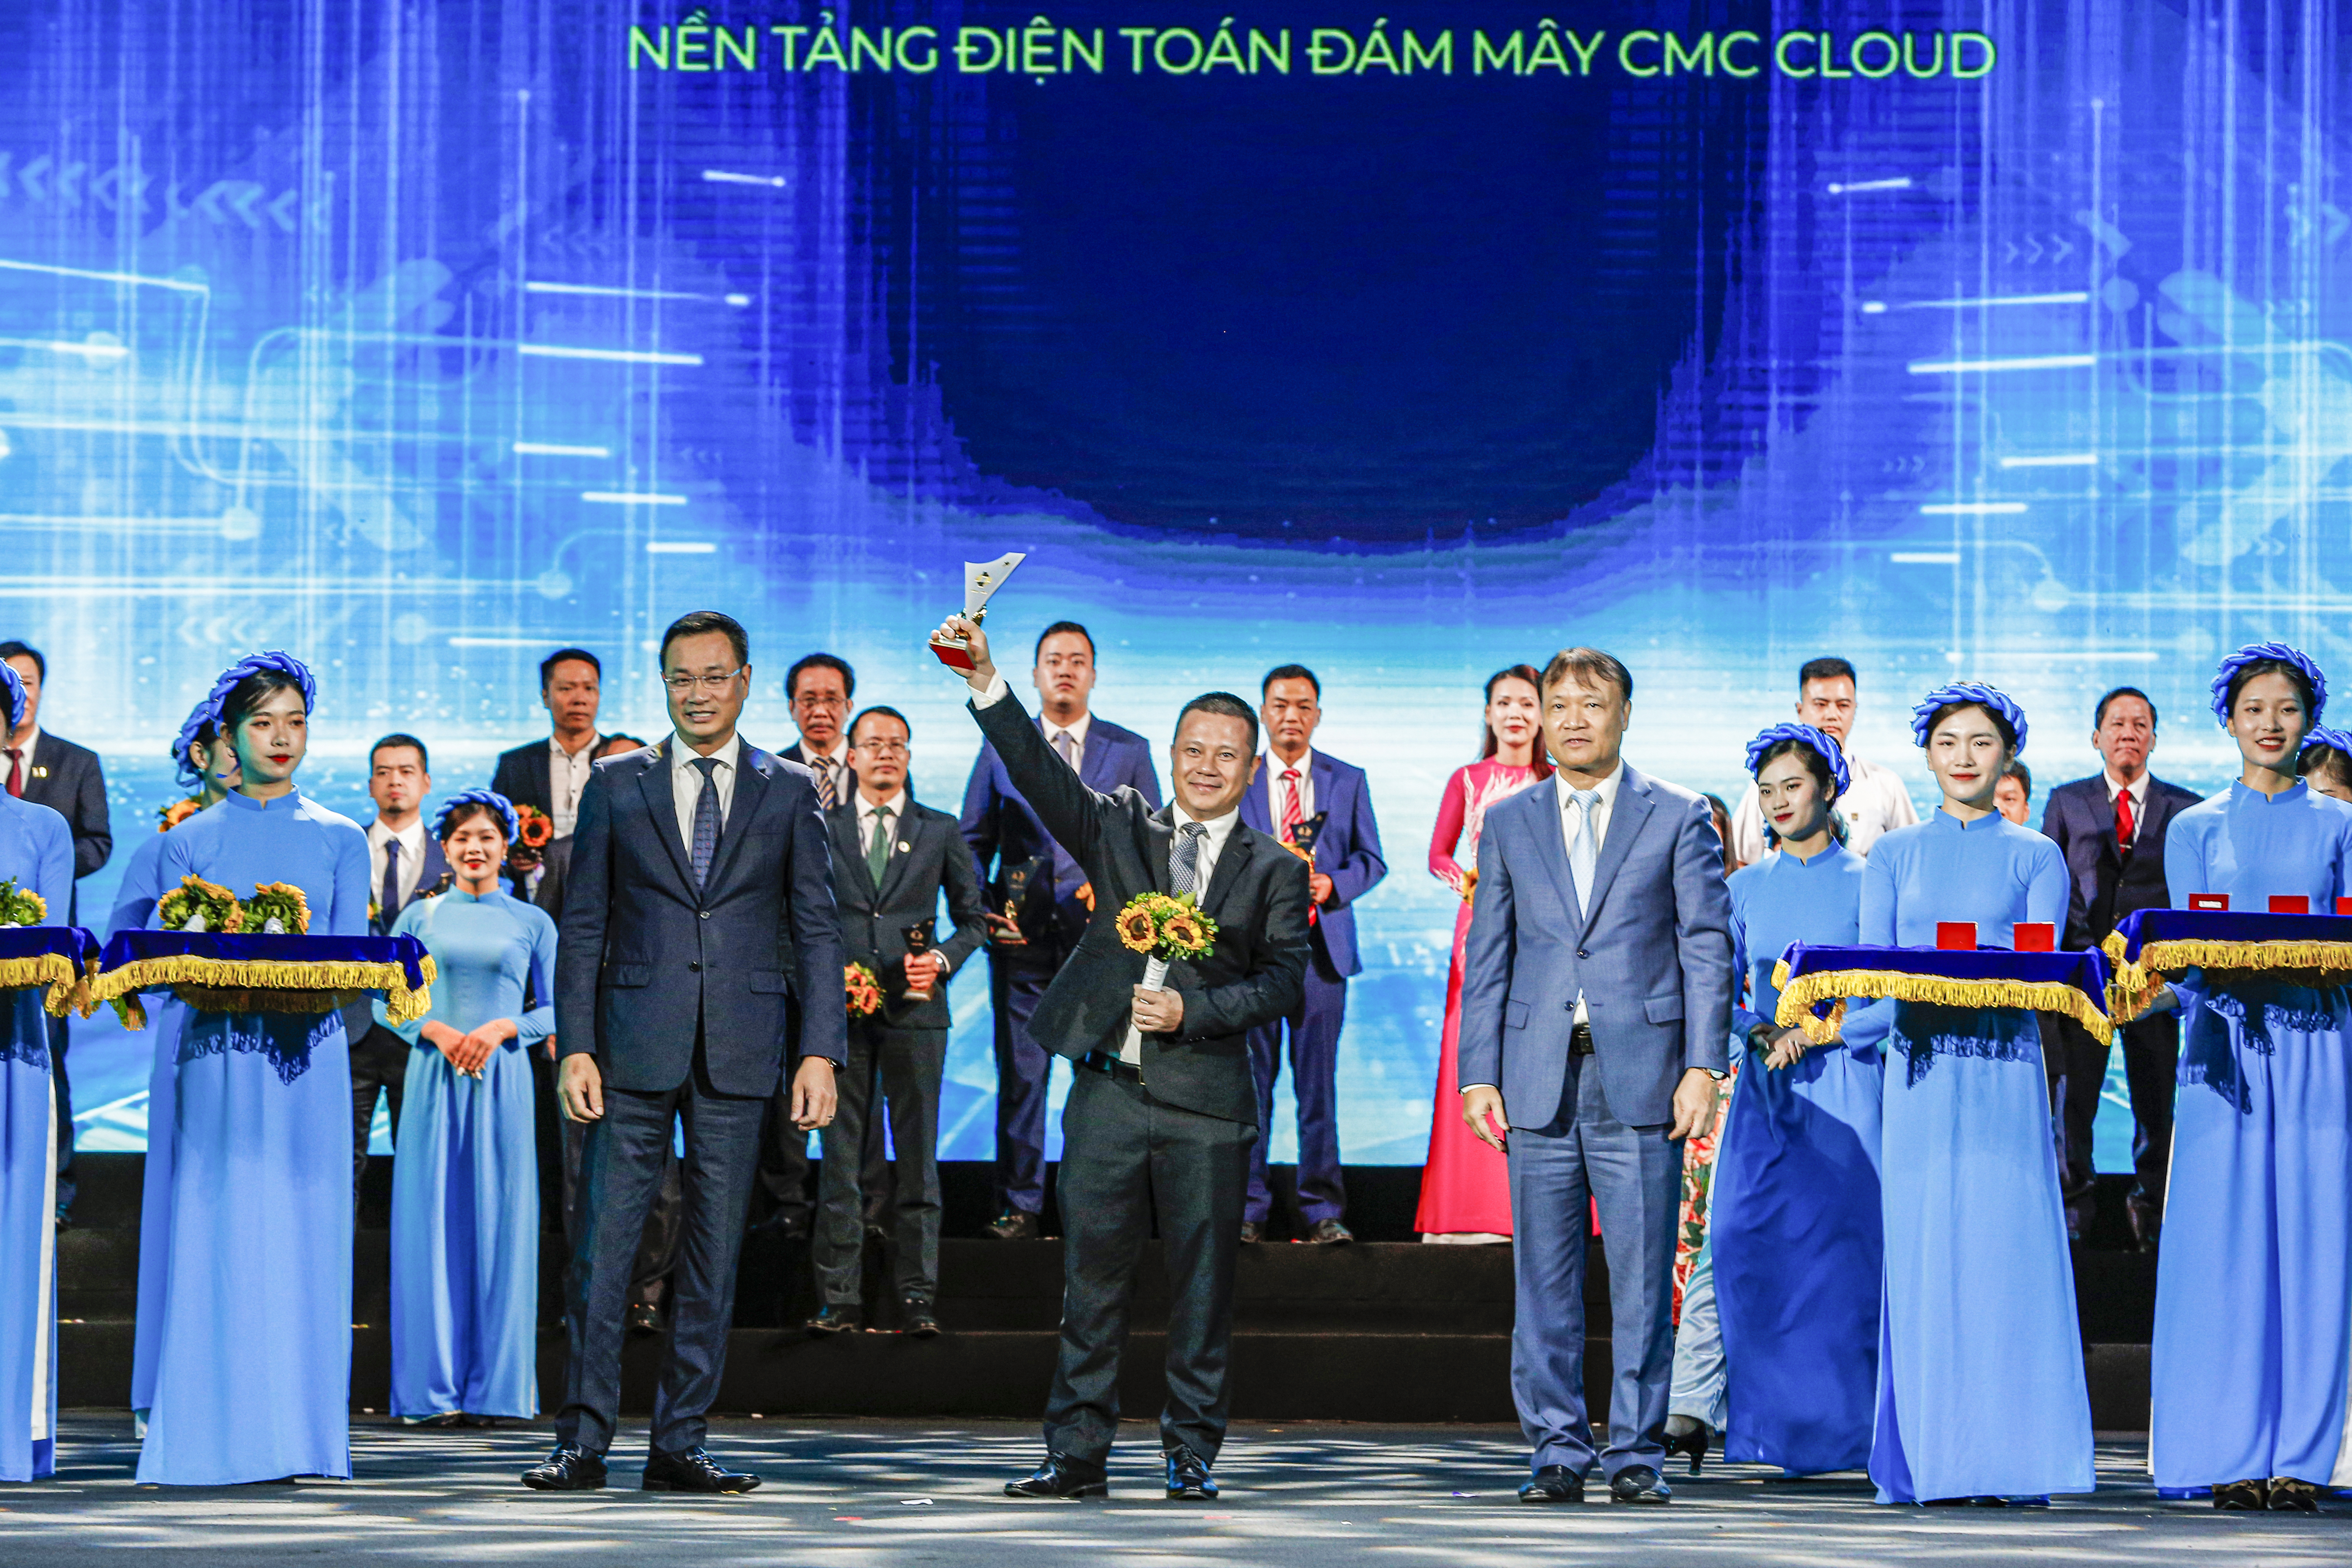 CMC Cloud platform wins Vietnam Value 2022 award